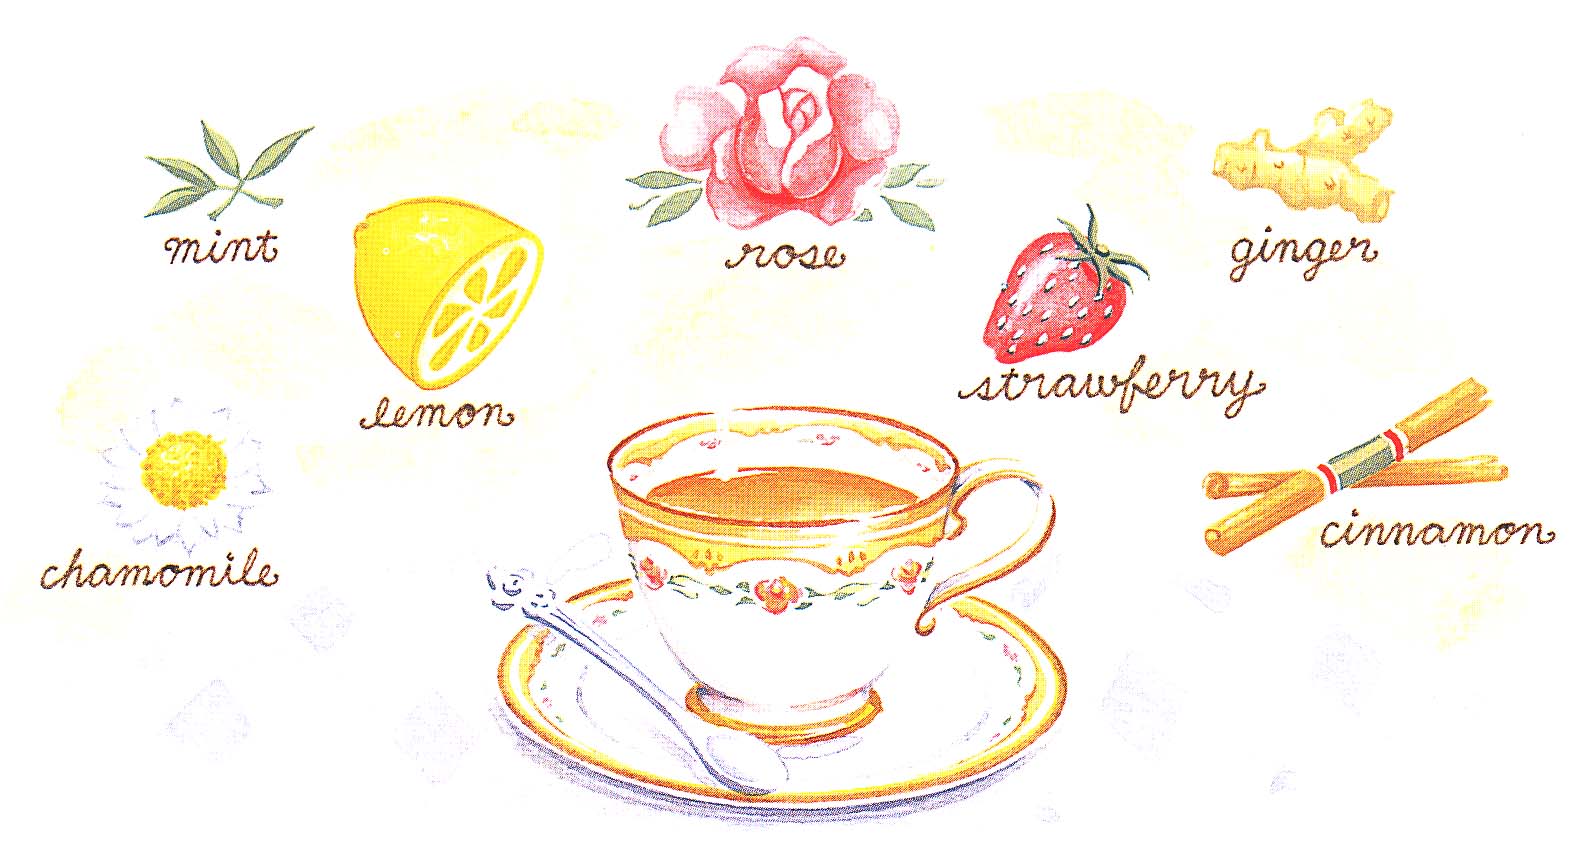 セイロン紅茶とは・美味しい飲み方ベストメニュー紹介